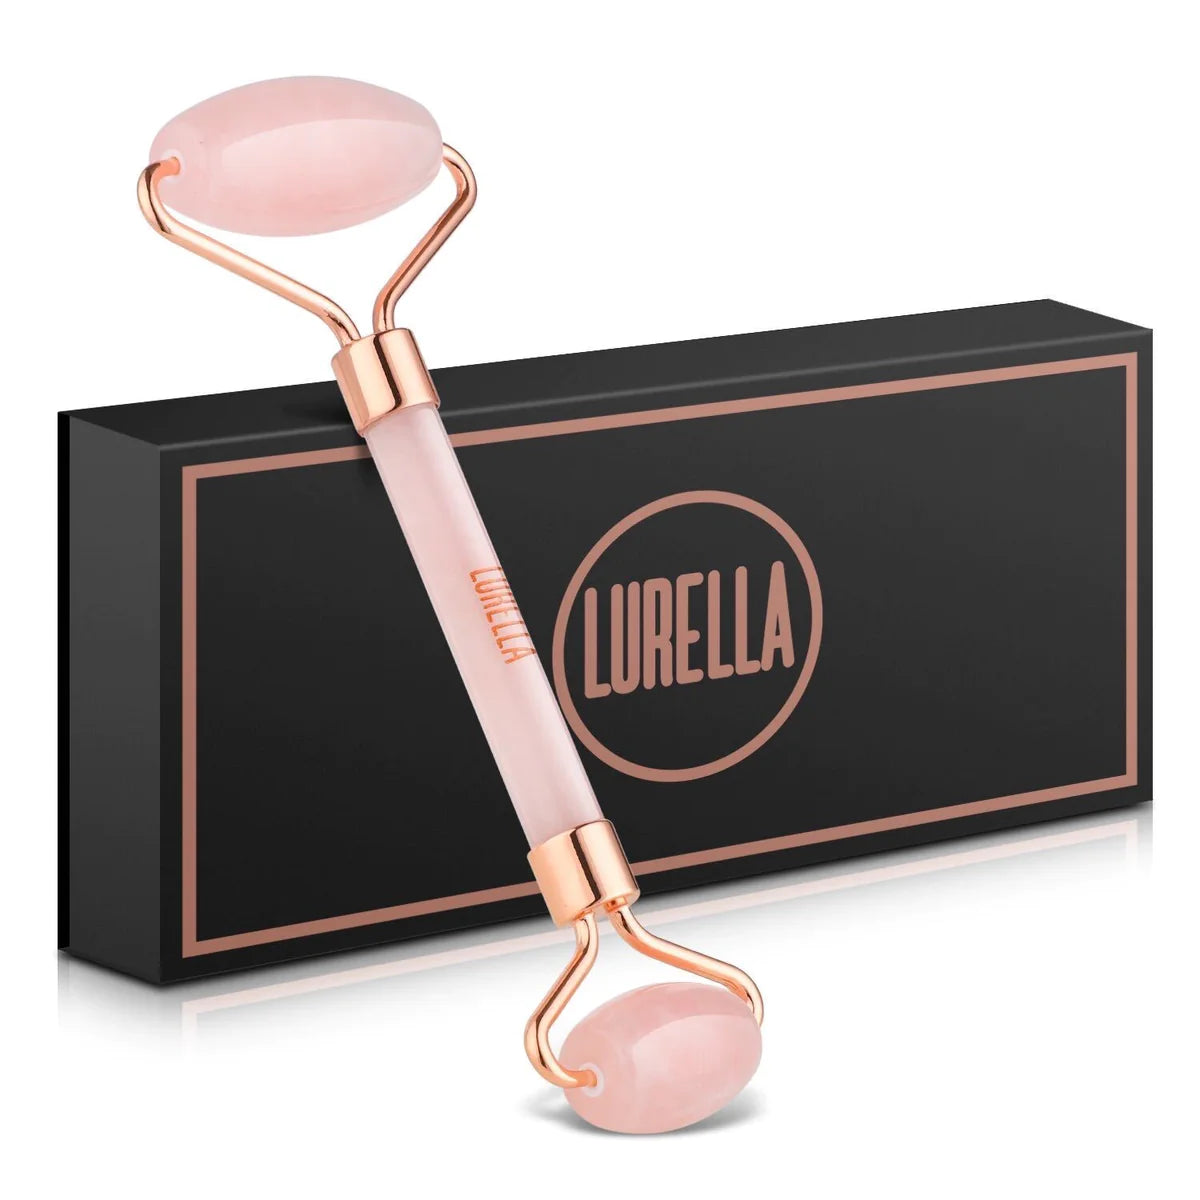 Lurella roller